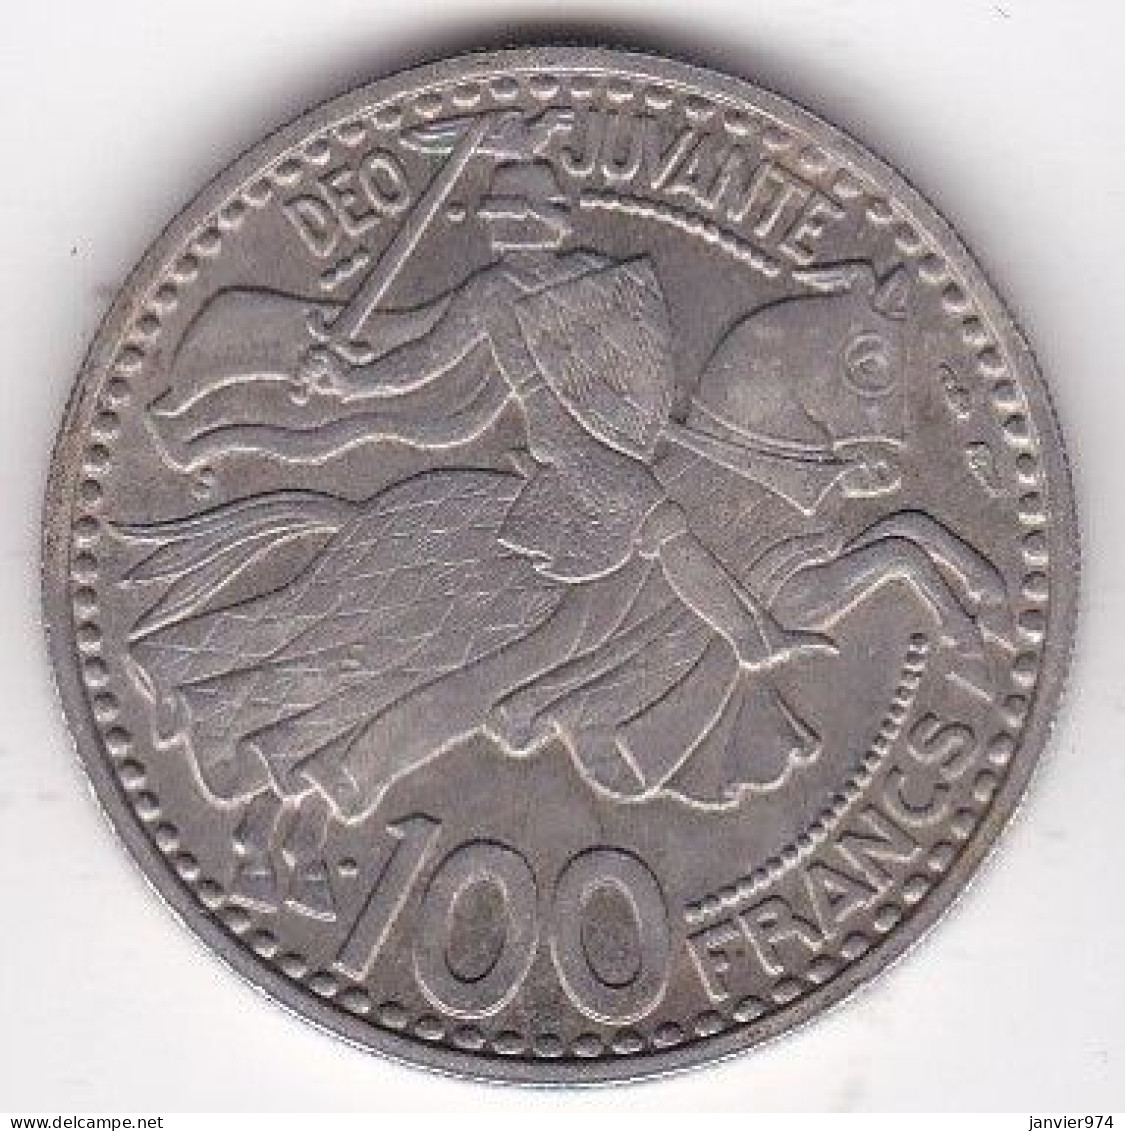 Monaco. 100 Francs 1950, Rainier III, En Cupro Nickel - 1949-1956 Old Francs